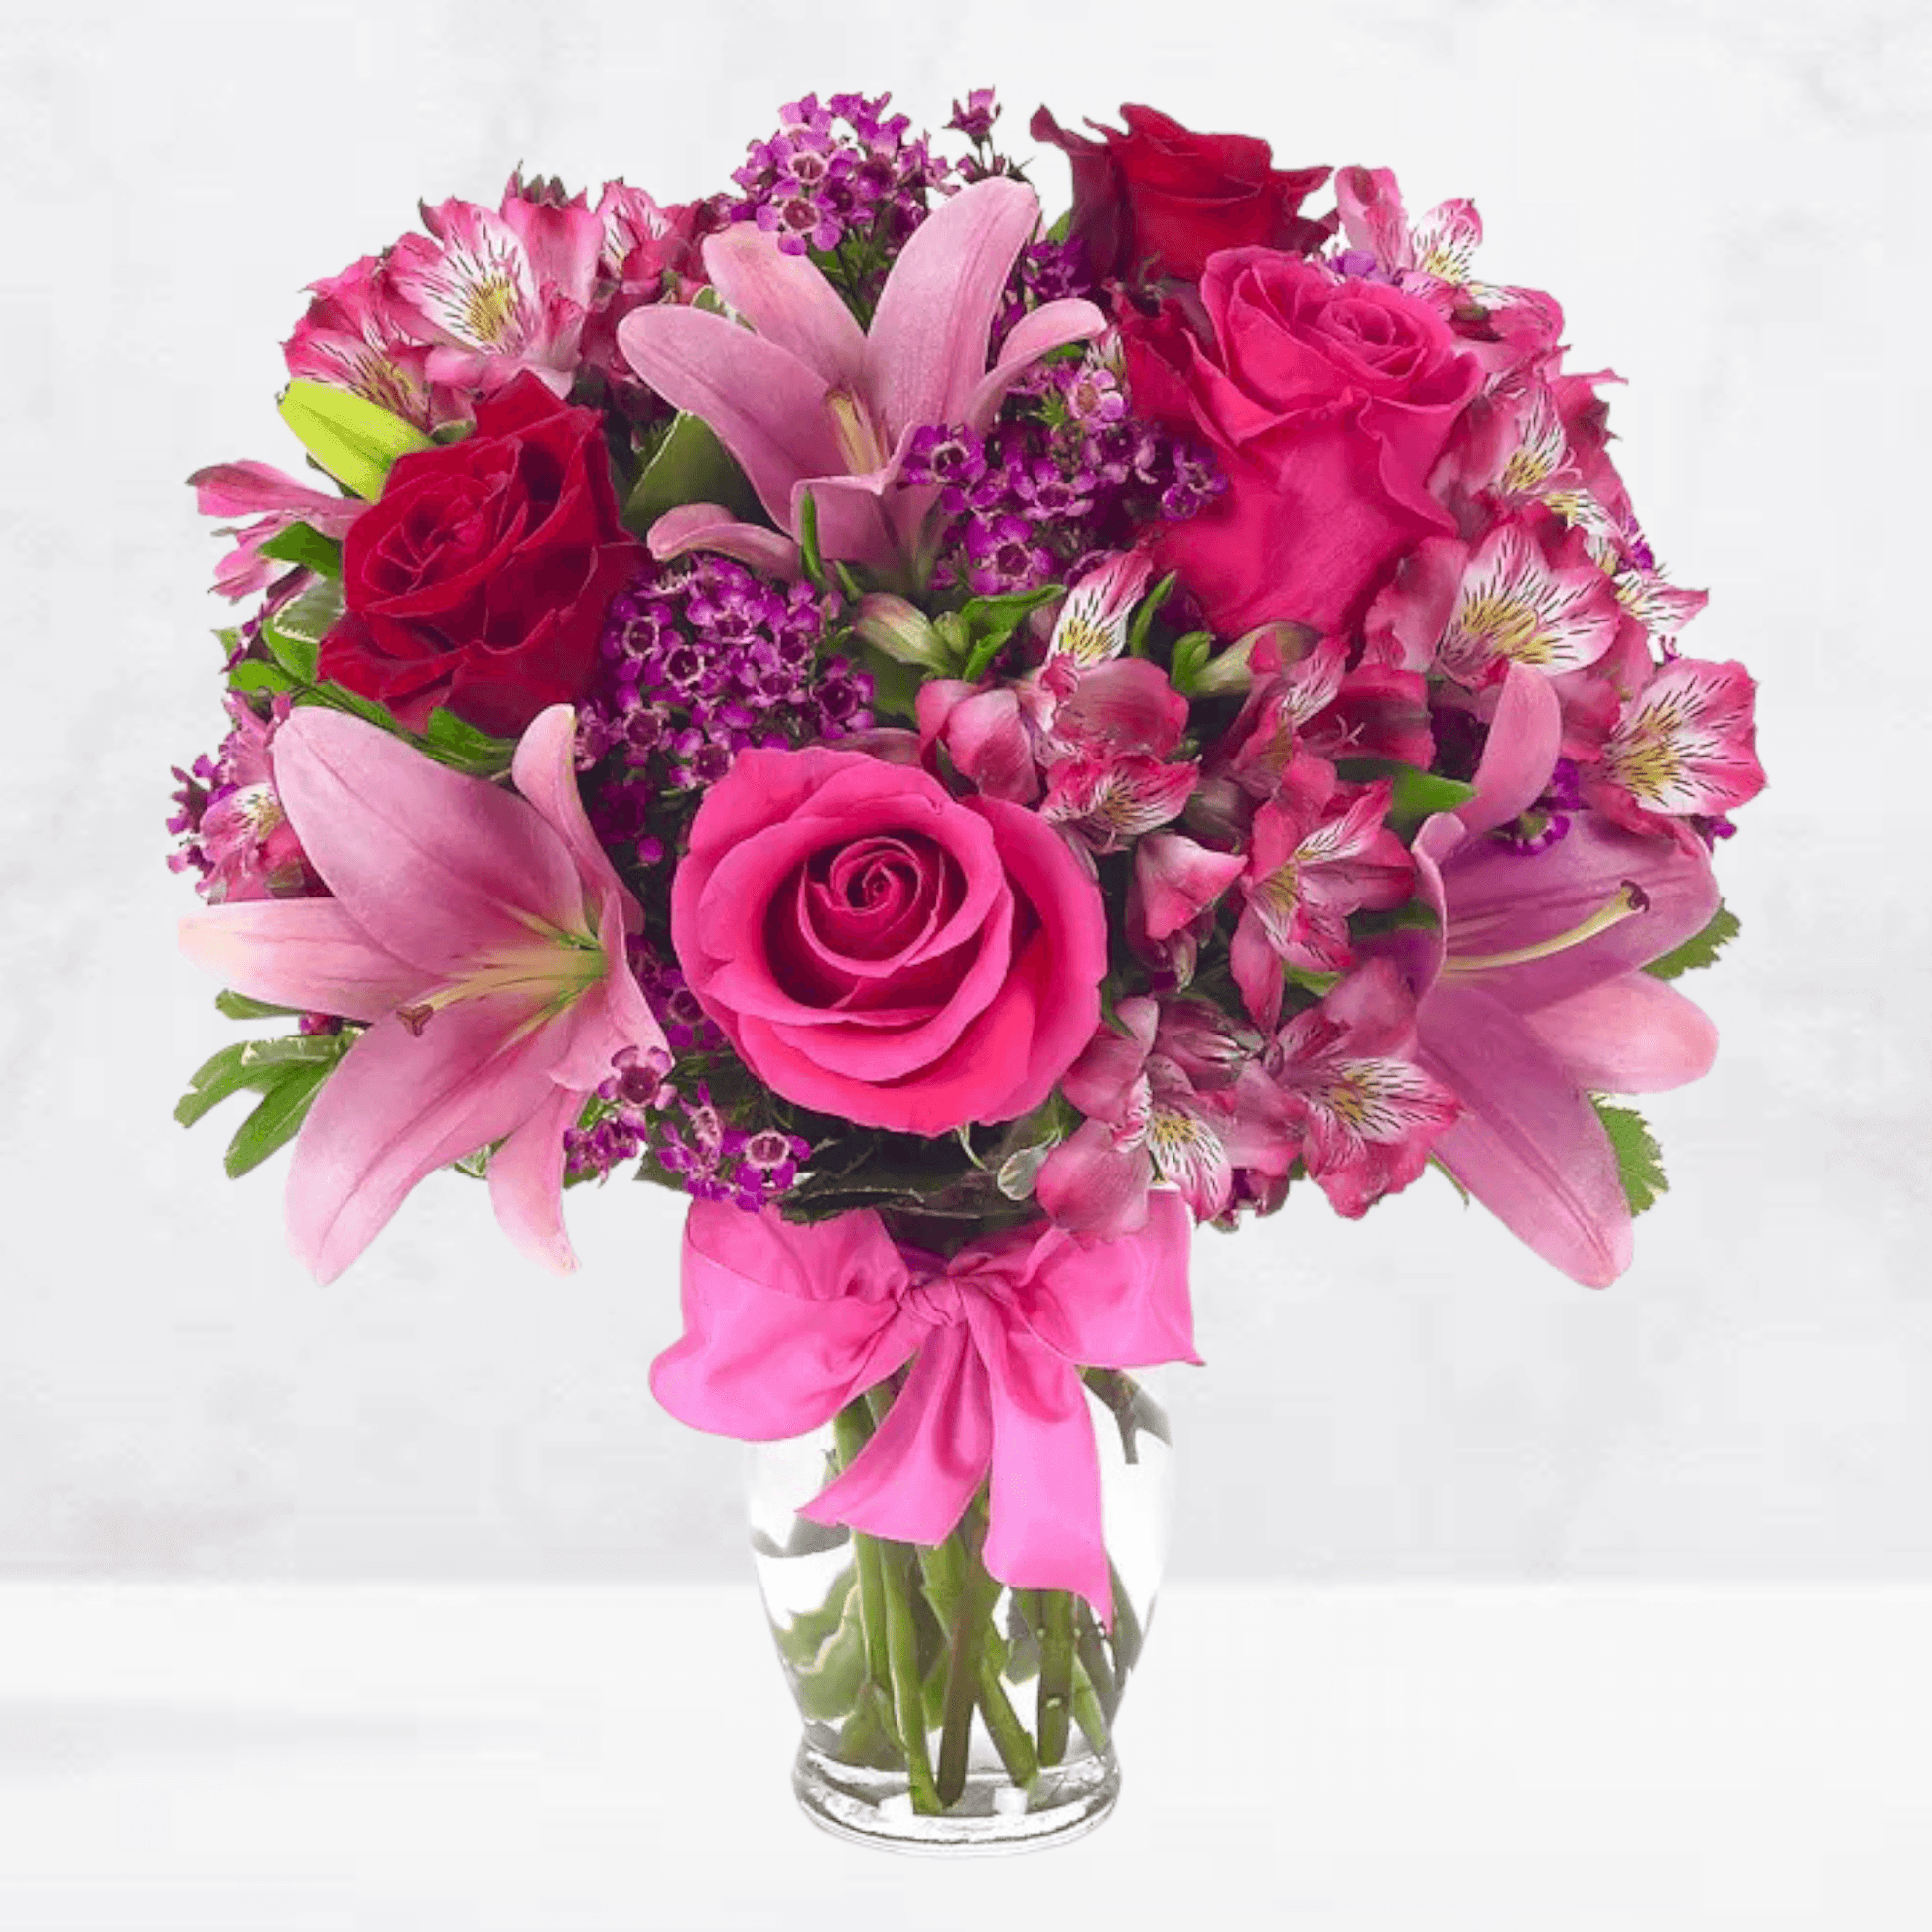 Rose & Lily Celebration - DGM Flowers  | Fort Lauderdale Florist